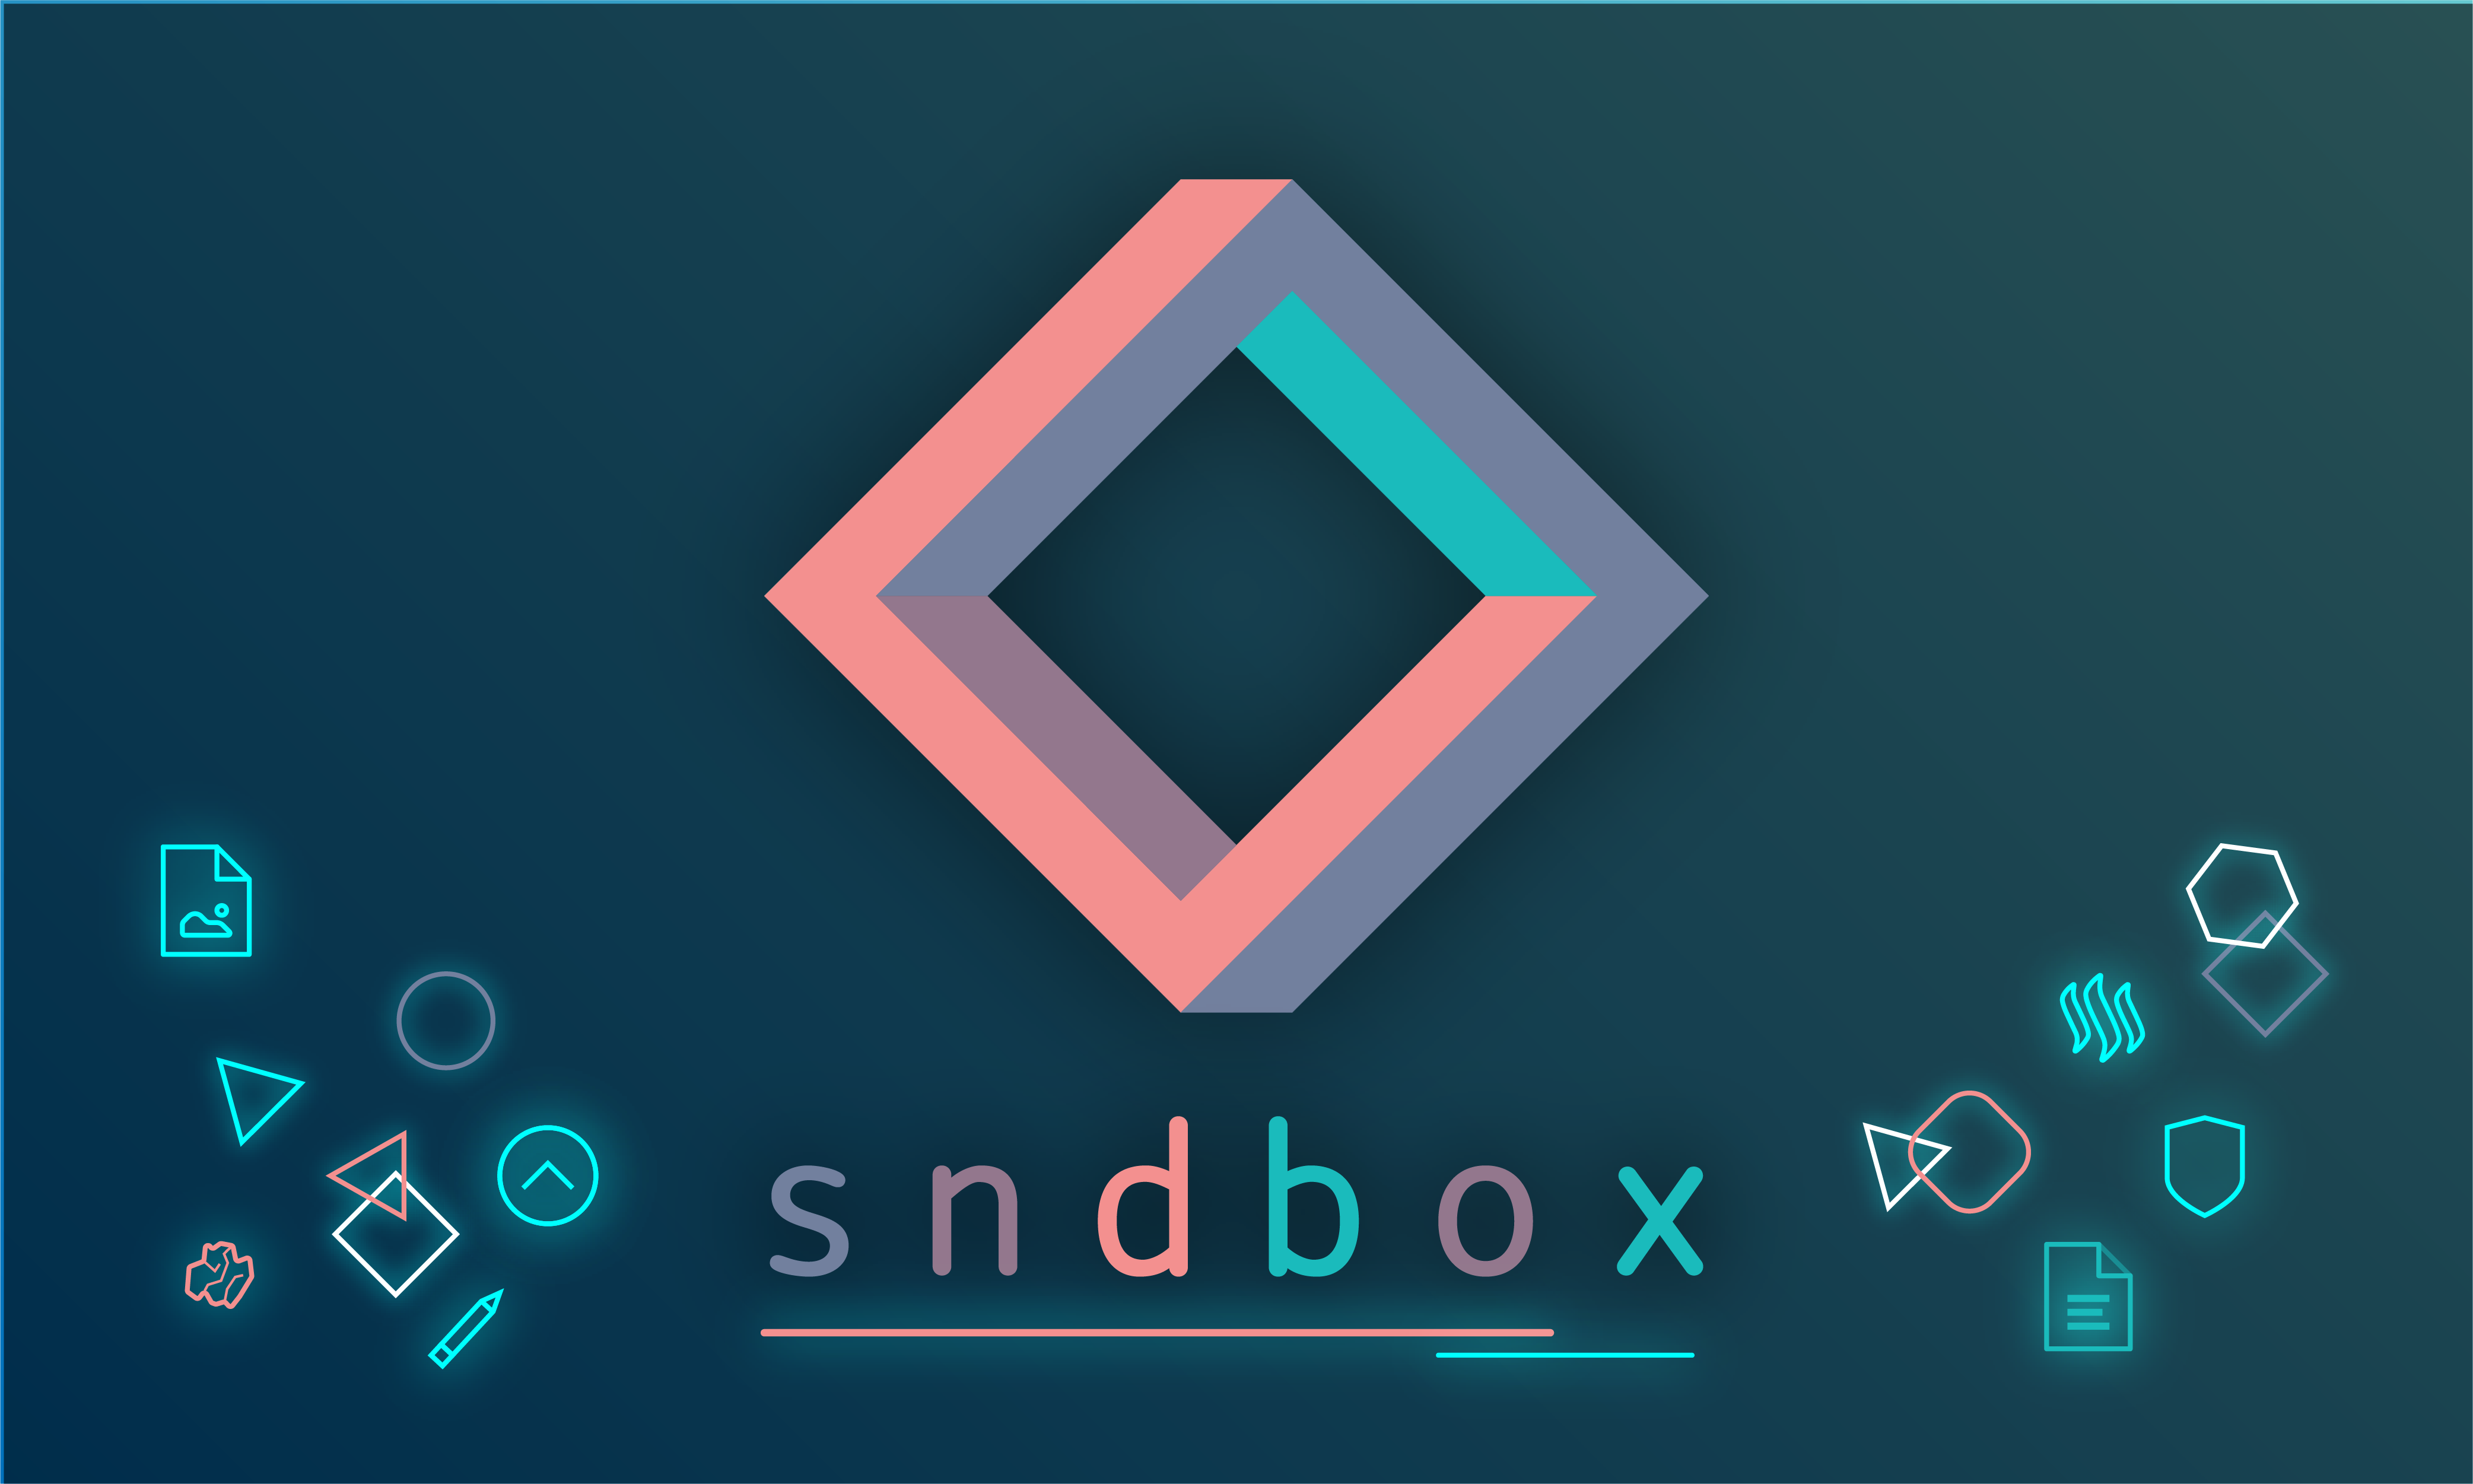 sndbox-diagrams-04.png